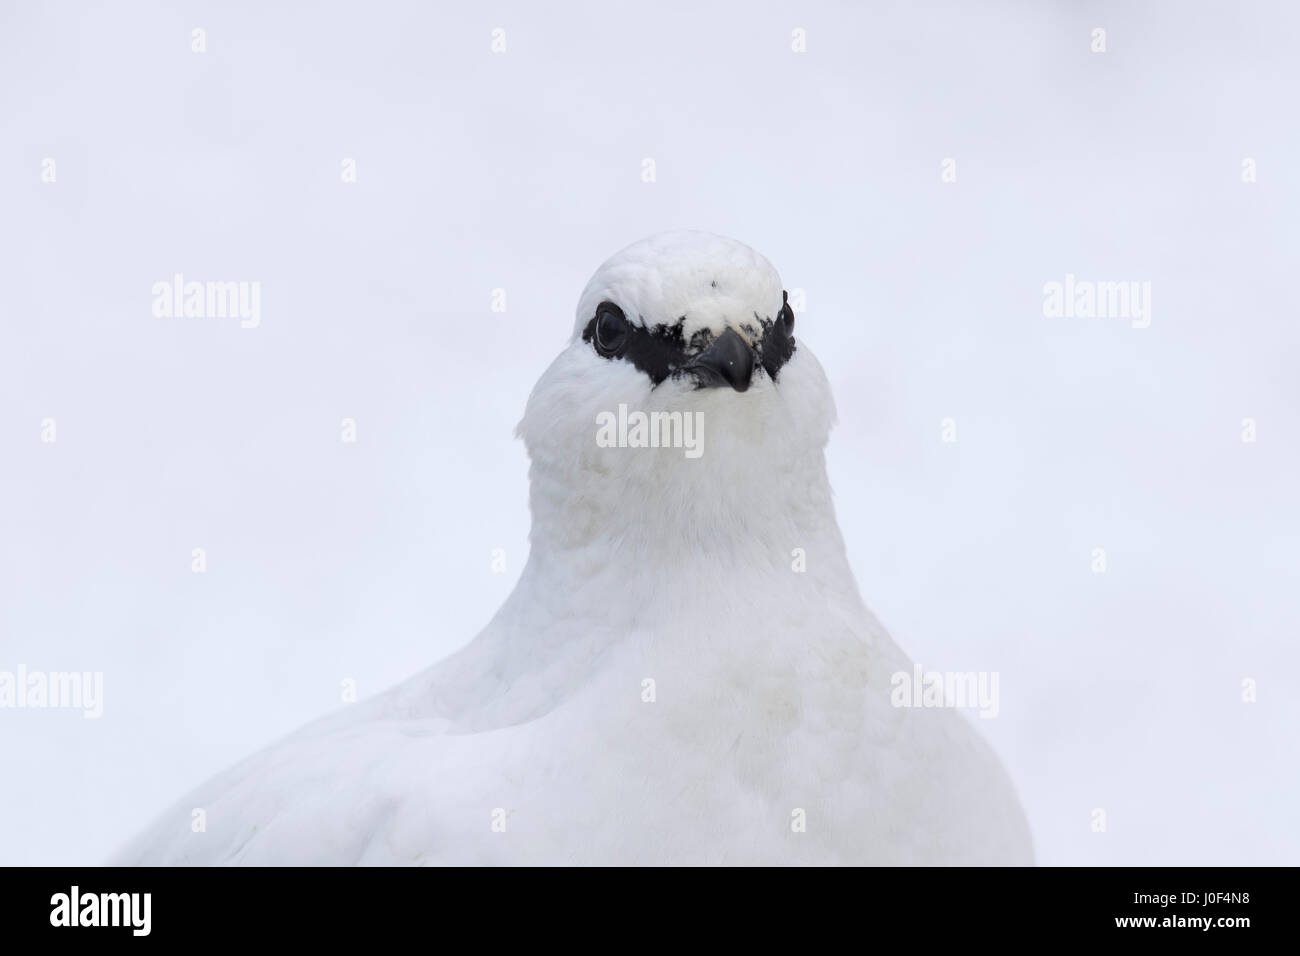 Rock ptarmigan (Lagopus muta / Lagopus mutus) female in winter plumage, close up portrait Stock Photo